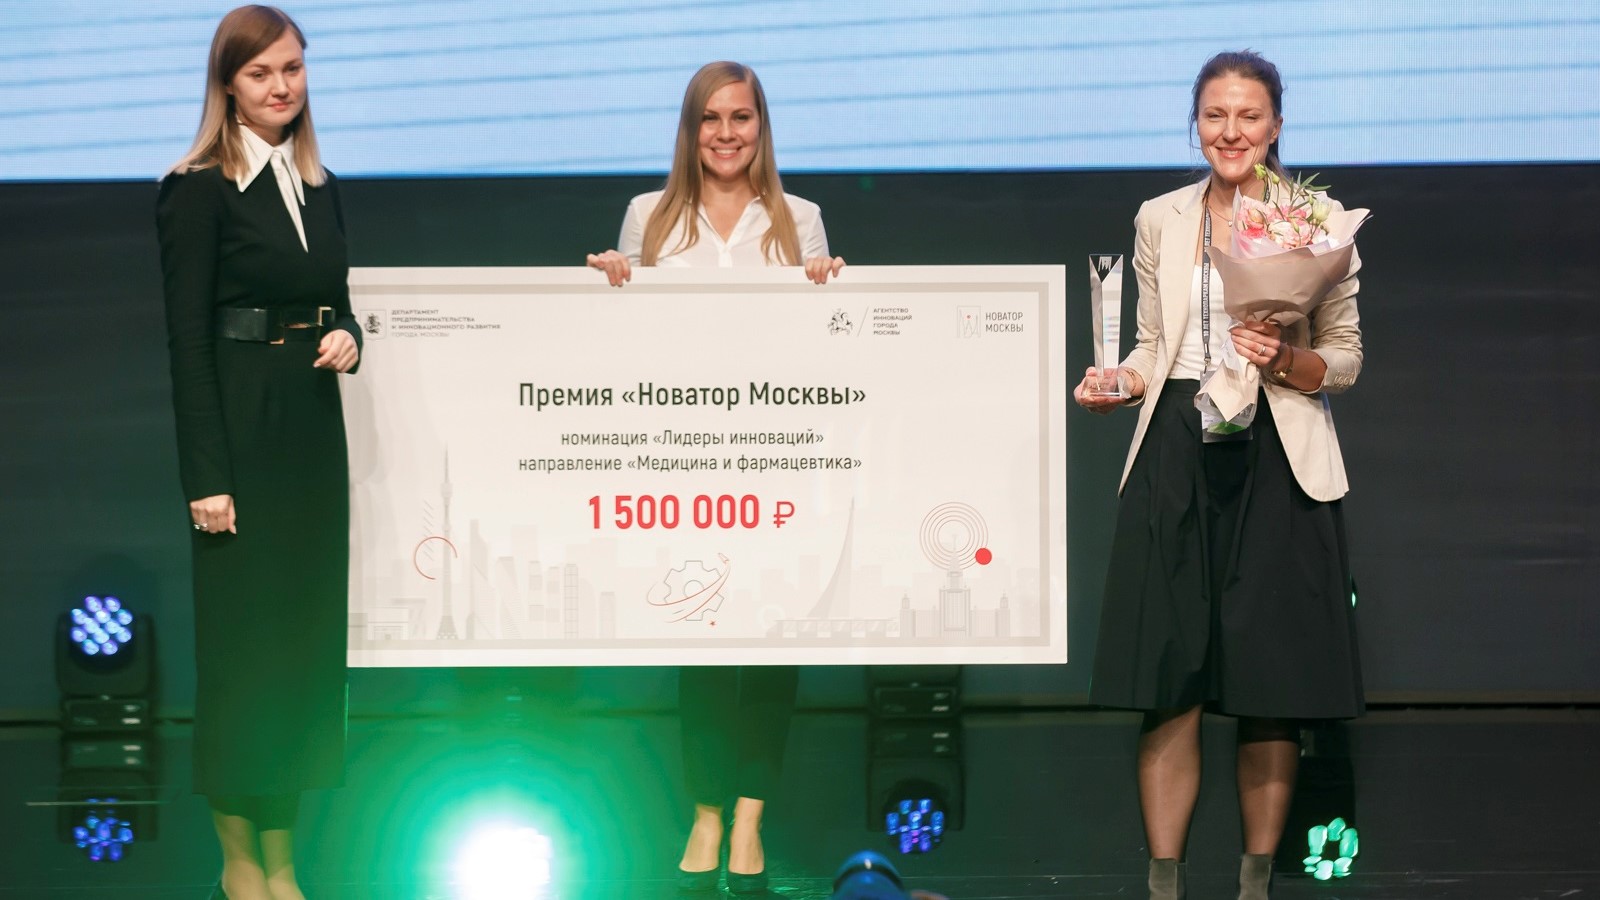 Конкурс для изобретателей "Новатор Москвы" на премию мэра пройдет в июне